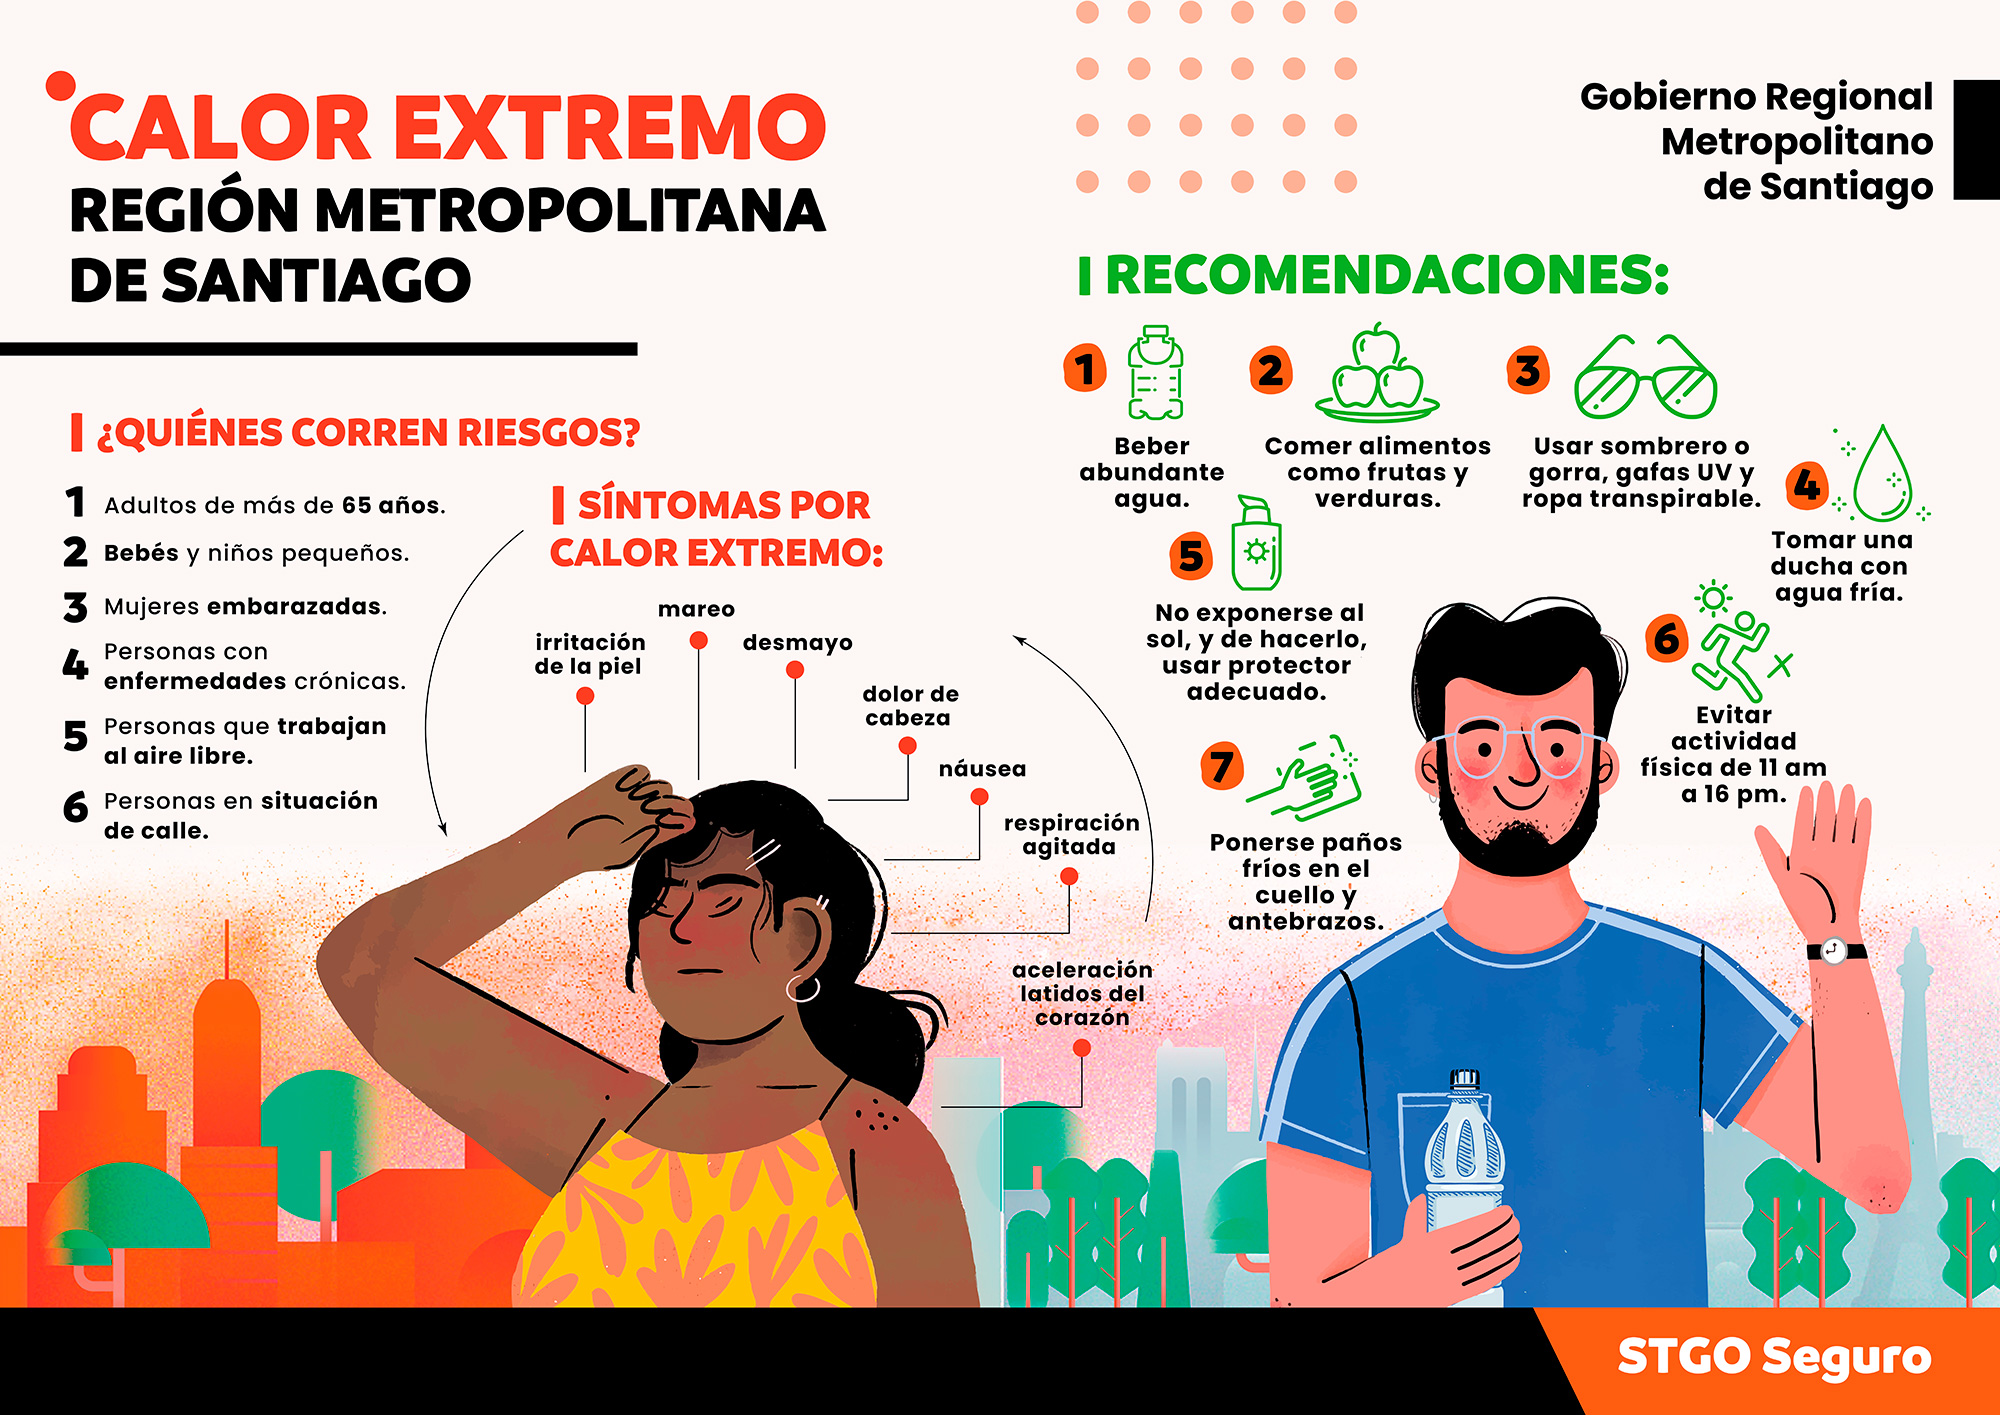 Recomendaciones por calor extremo de Gobierno Regional Metropolitano